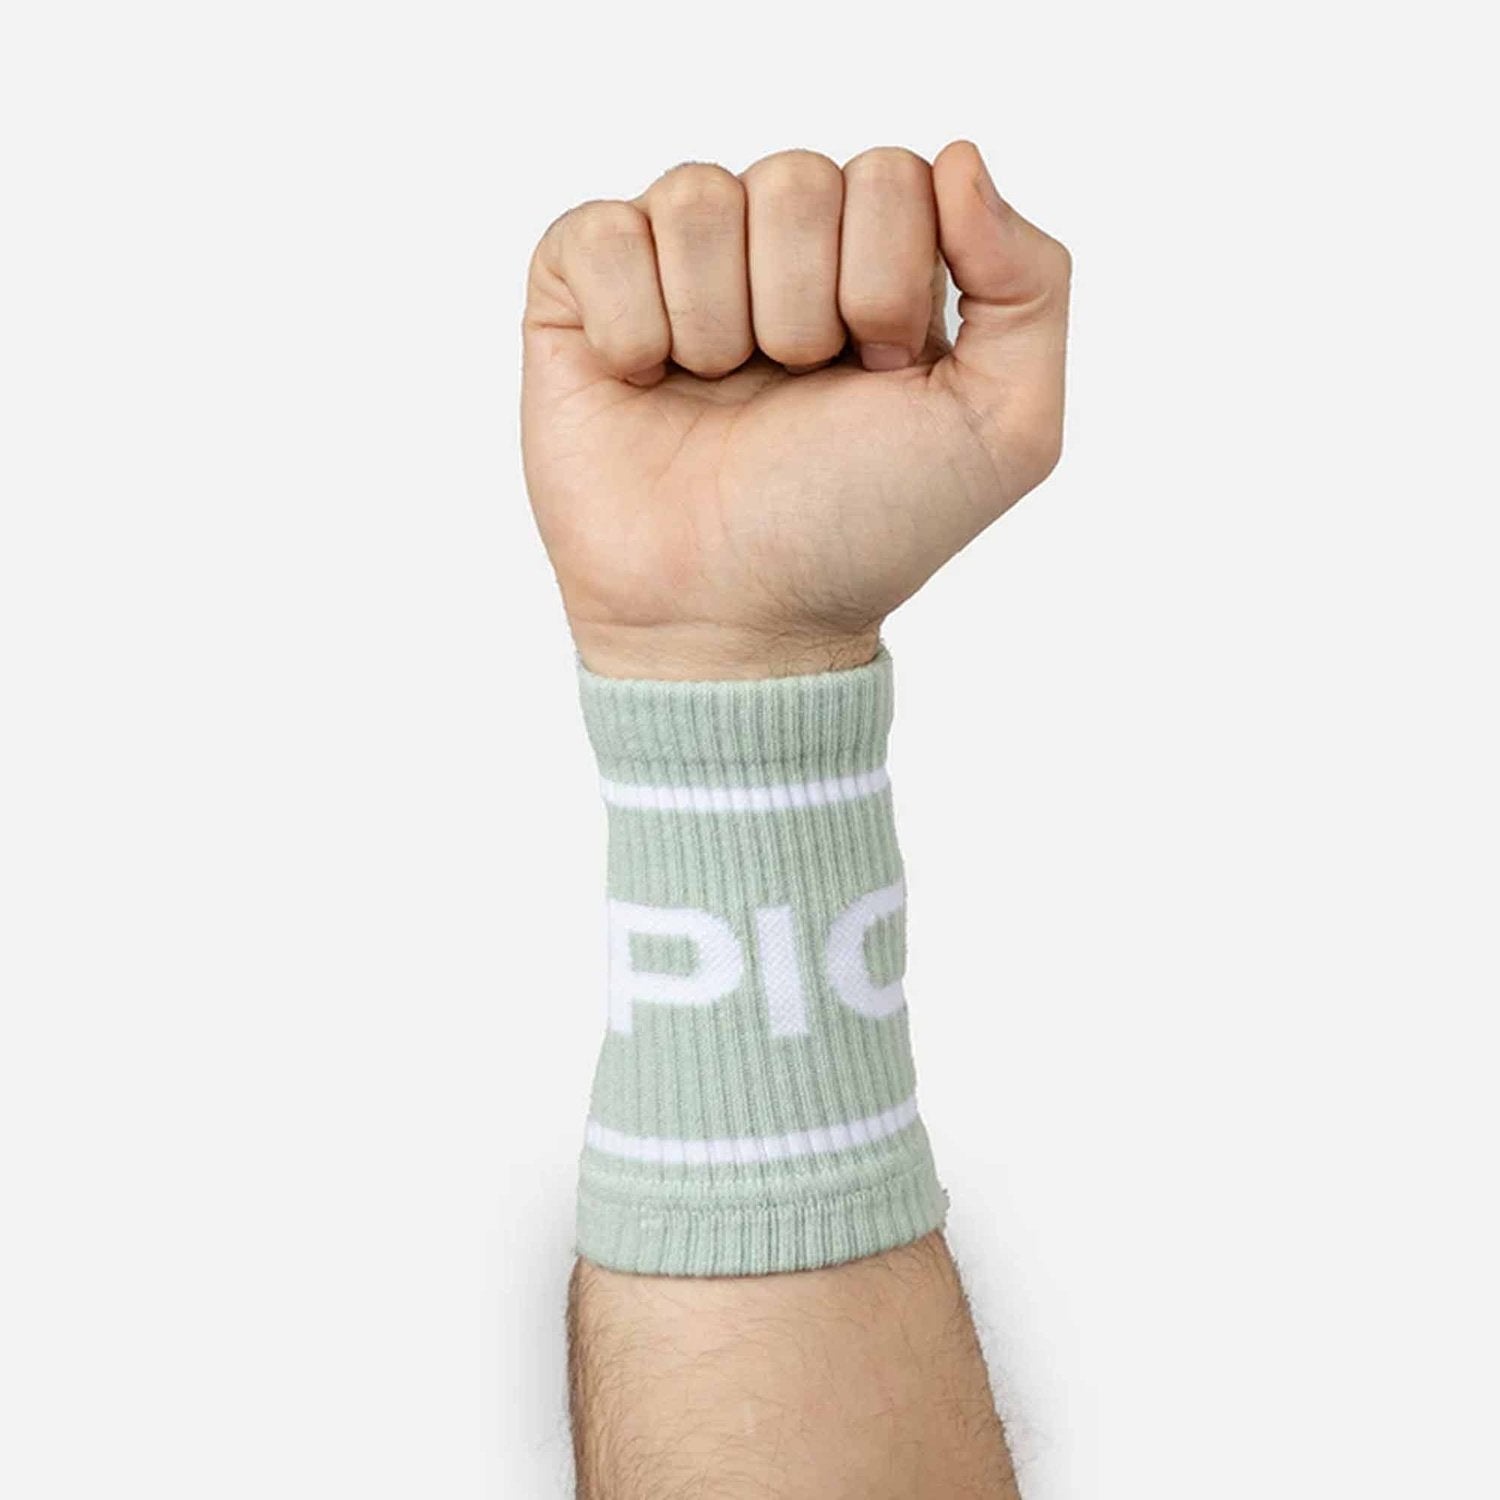 PicSil Wrist Bands (Schweissbänder) Grün kaufen bei HighPowered.ch